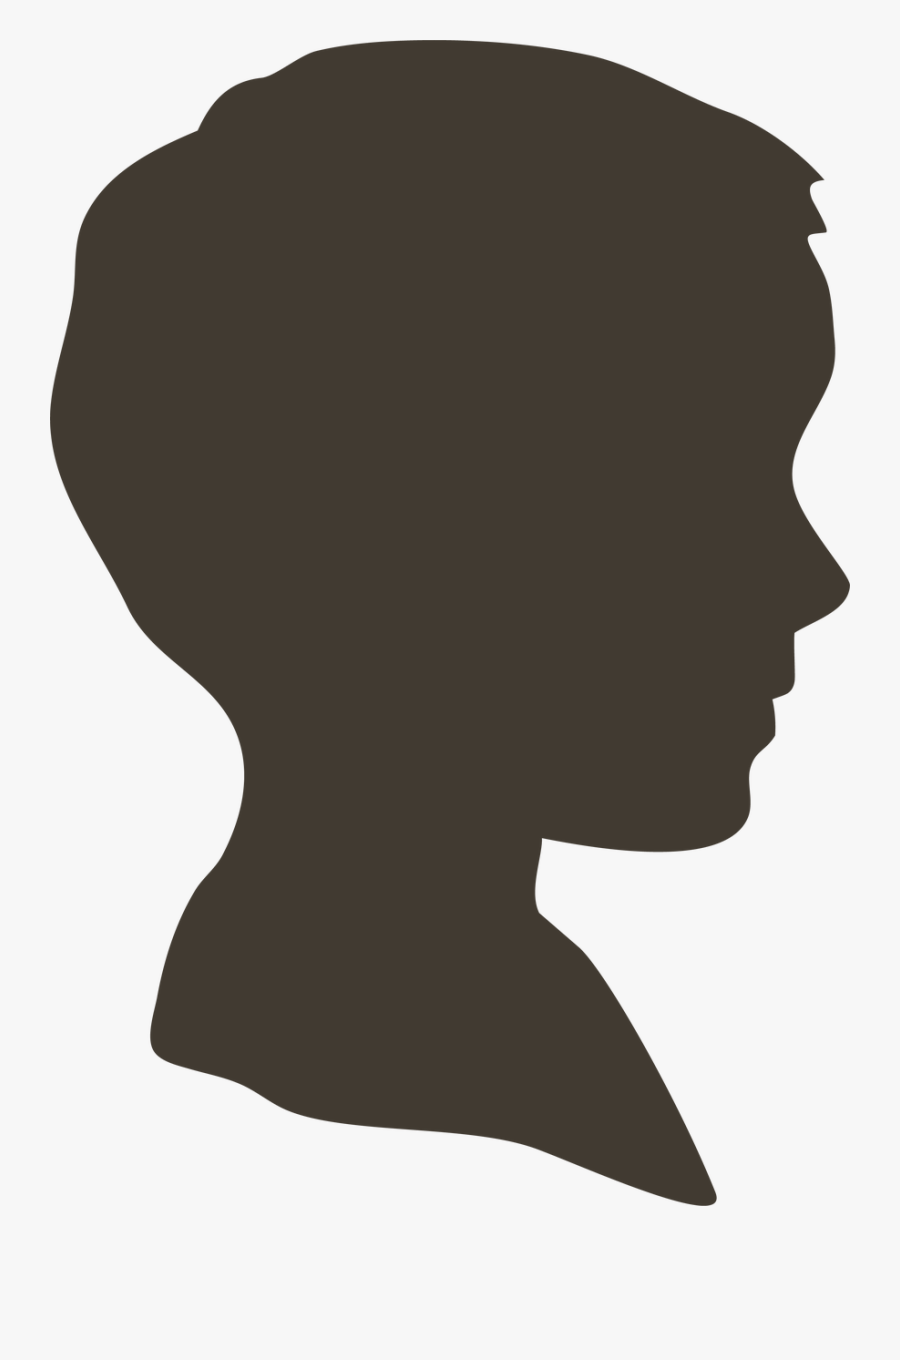 Boy Silhouette - Transparent Boy Head Silhouette, Transparent Clipart